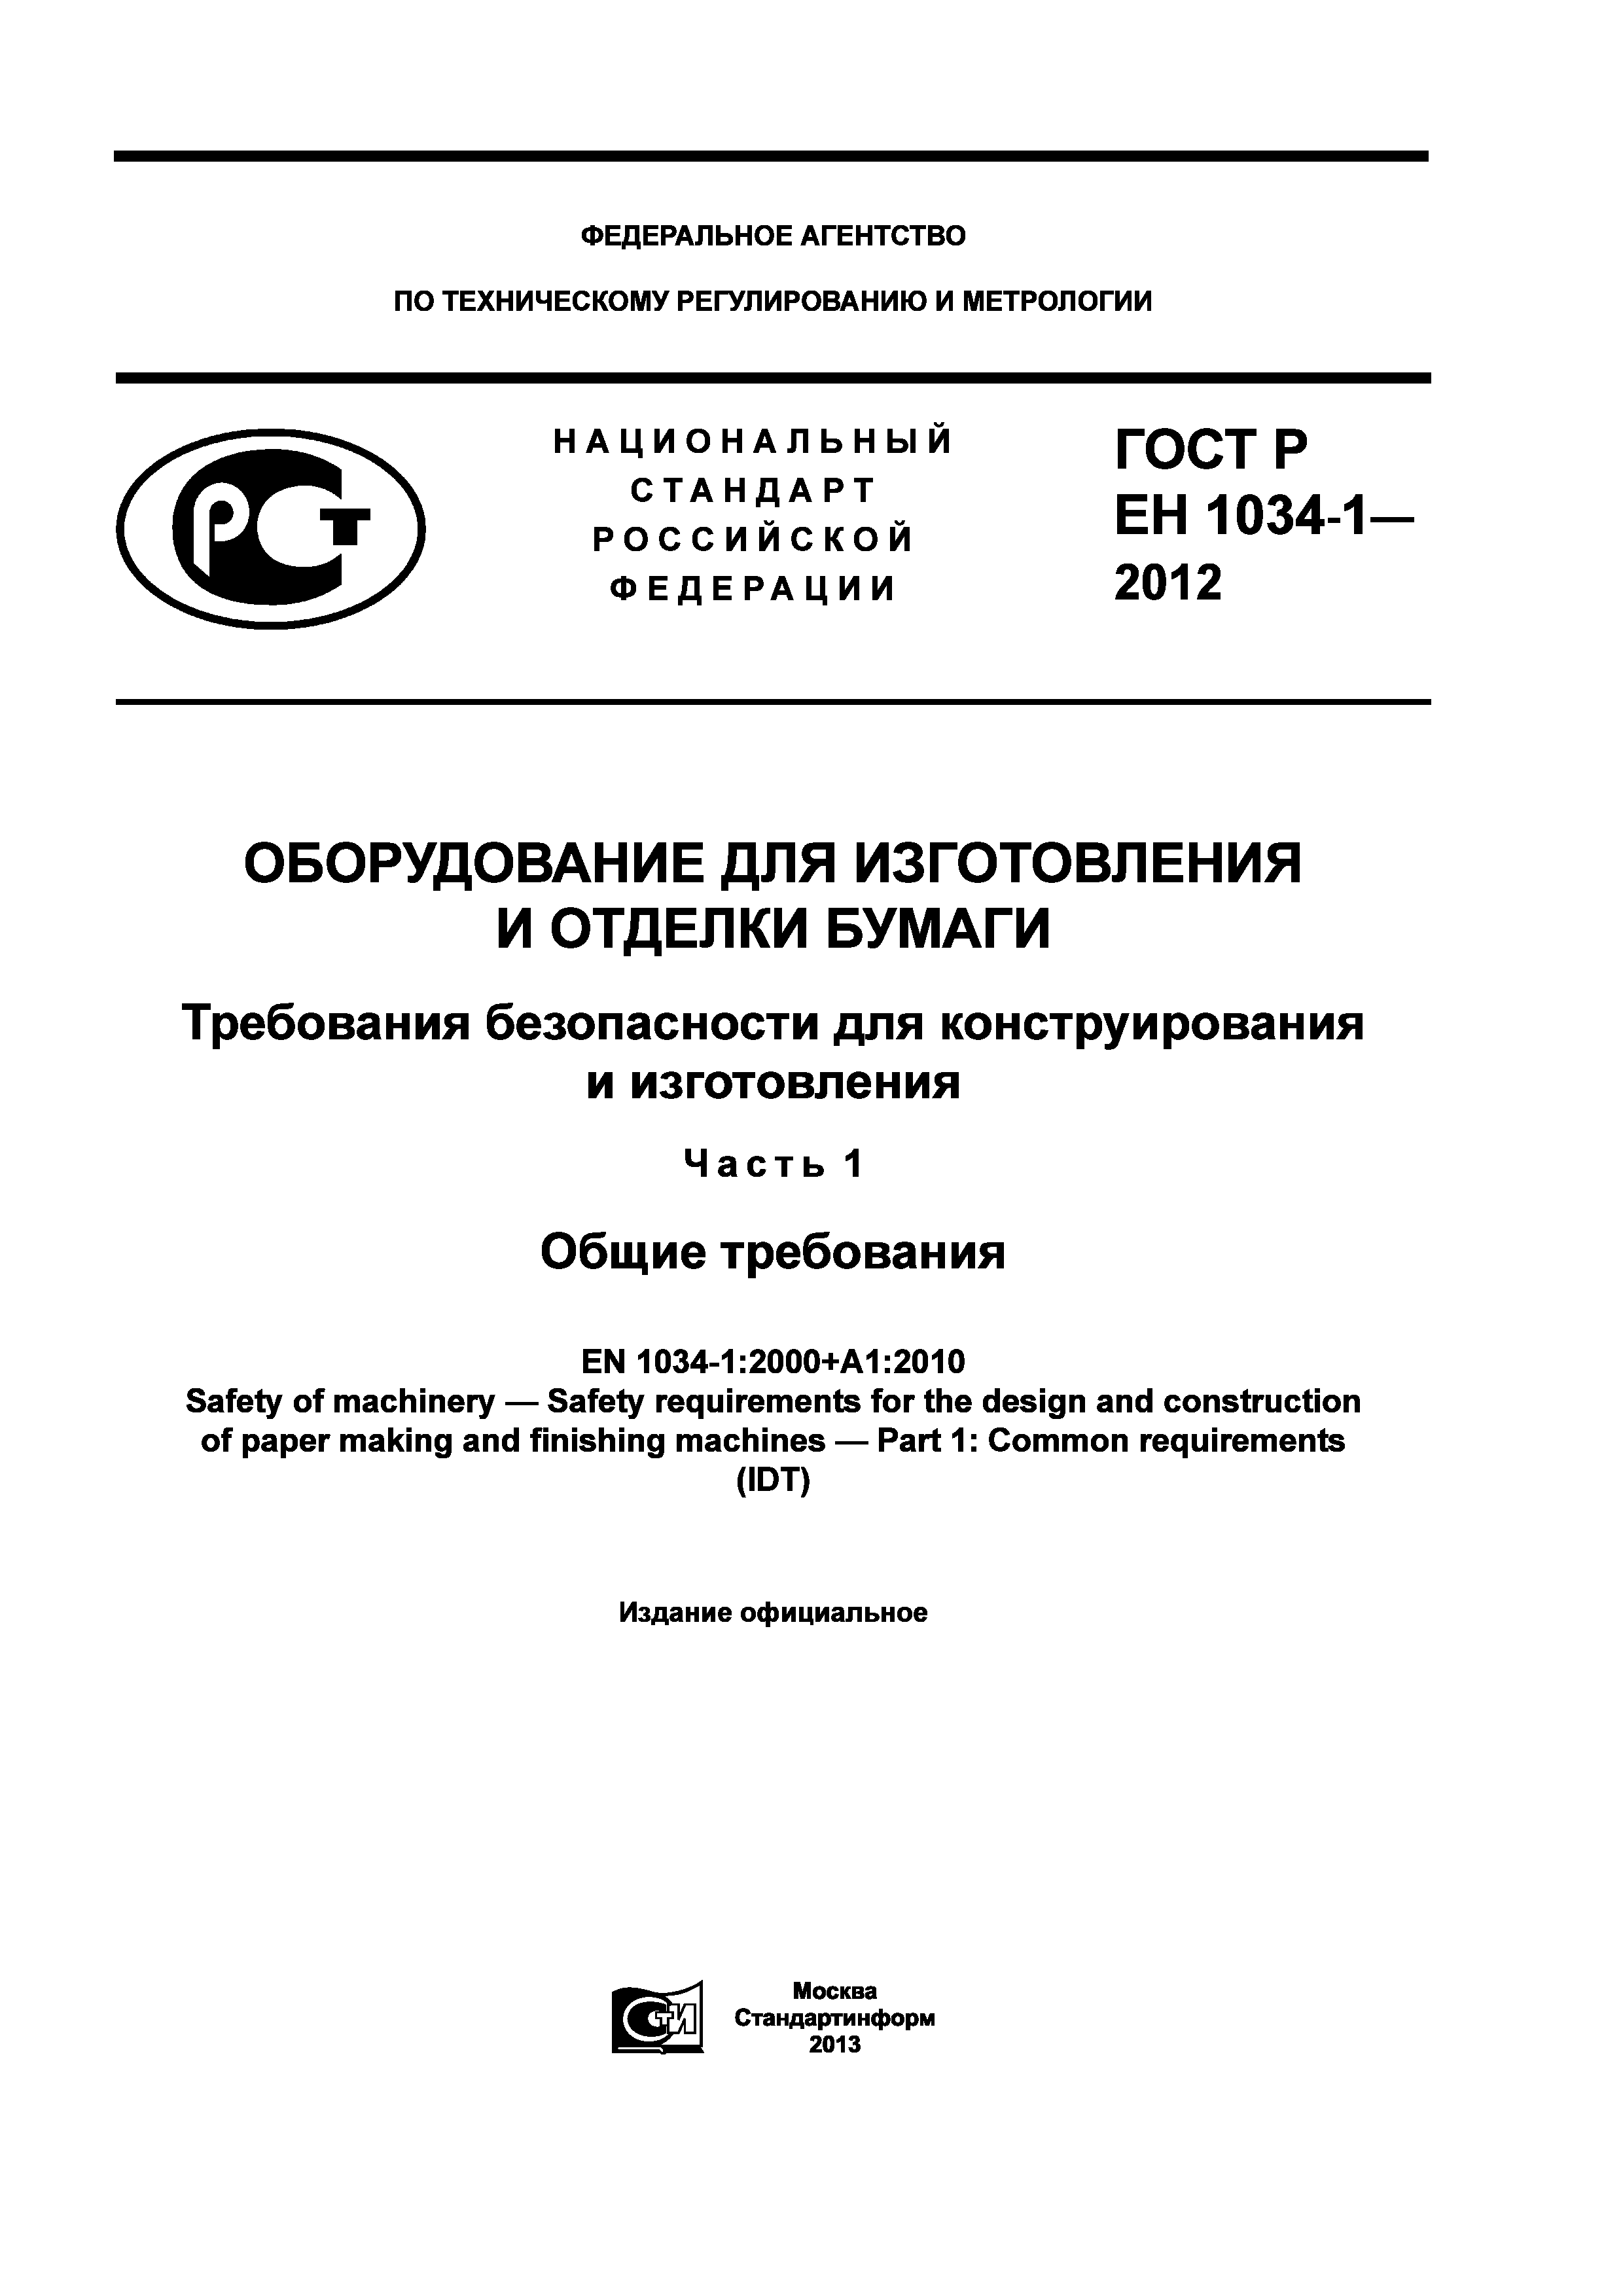 ГОСТ Р ЕН 1034-1-2012